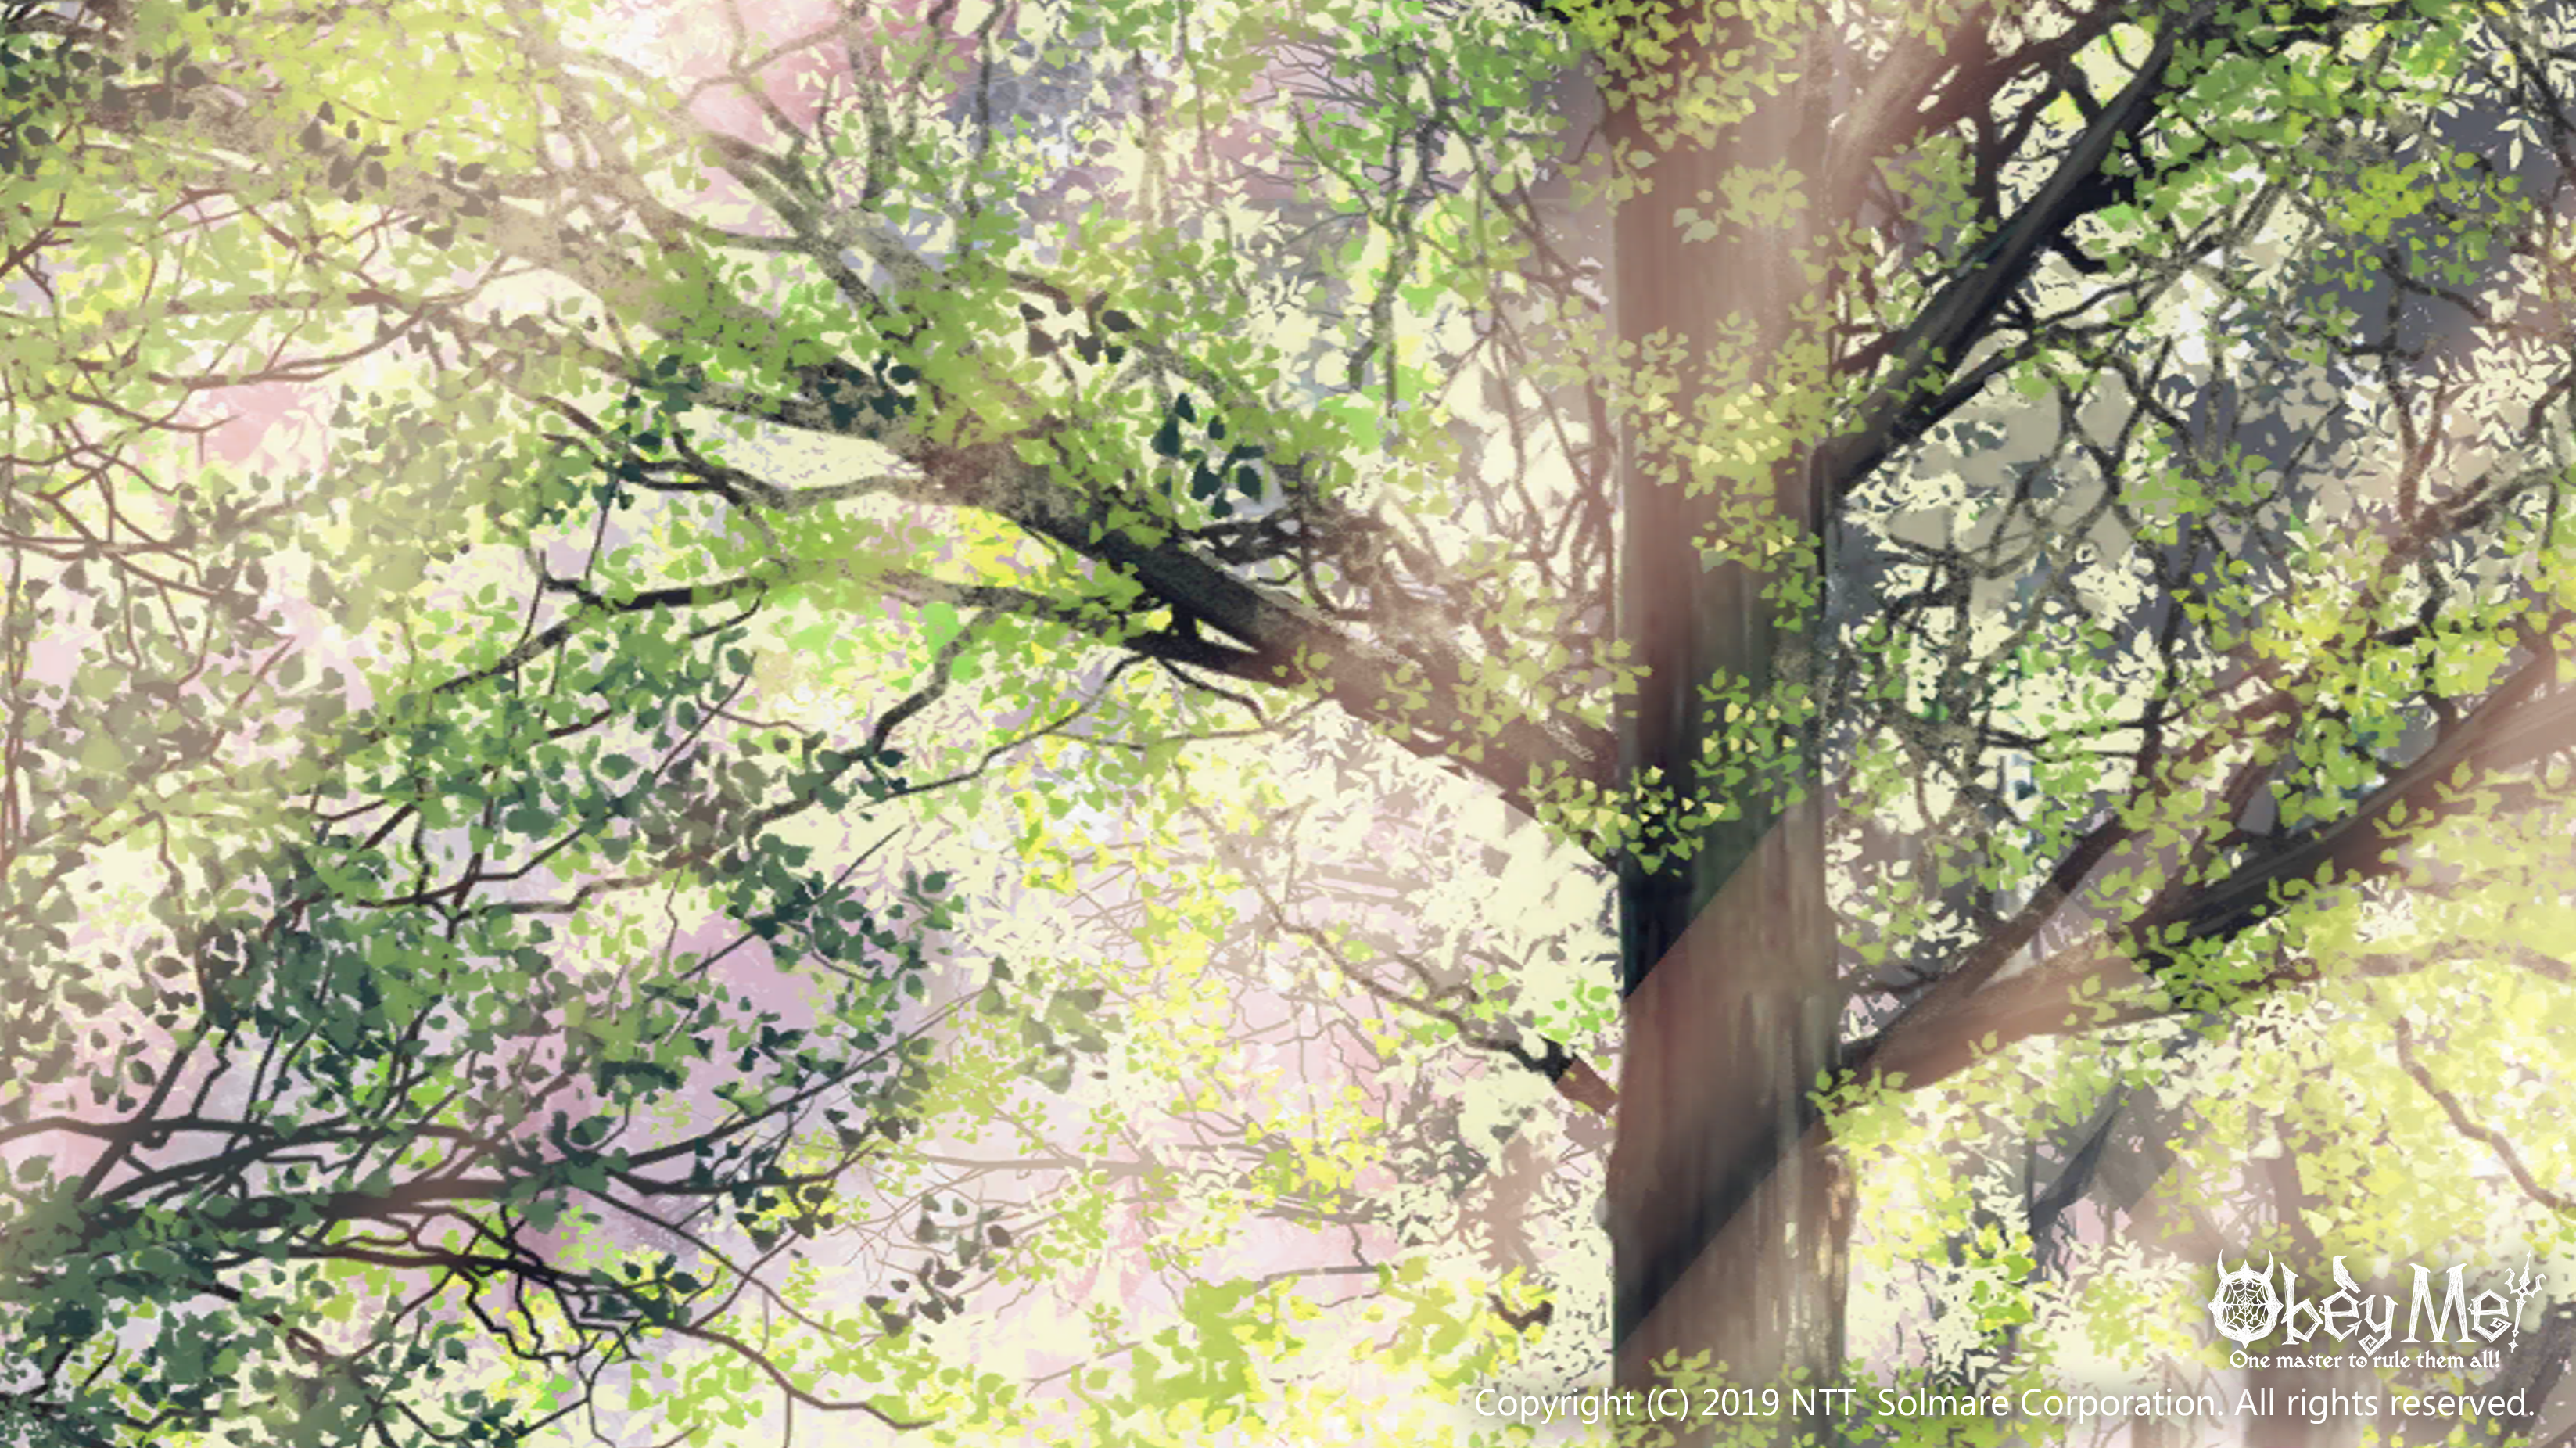 upload "Celestial Forest.png"